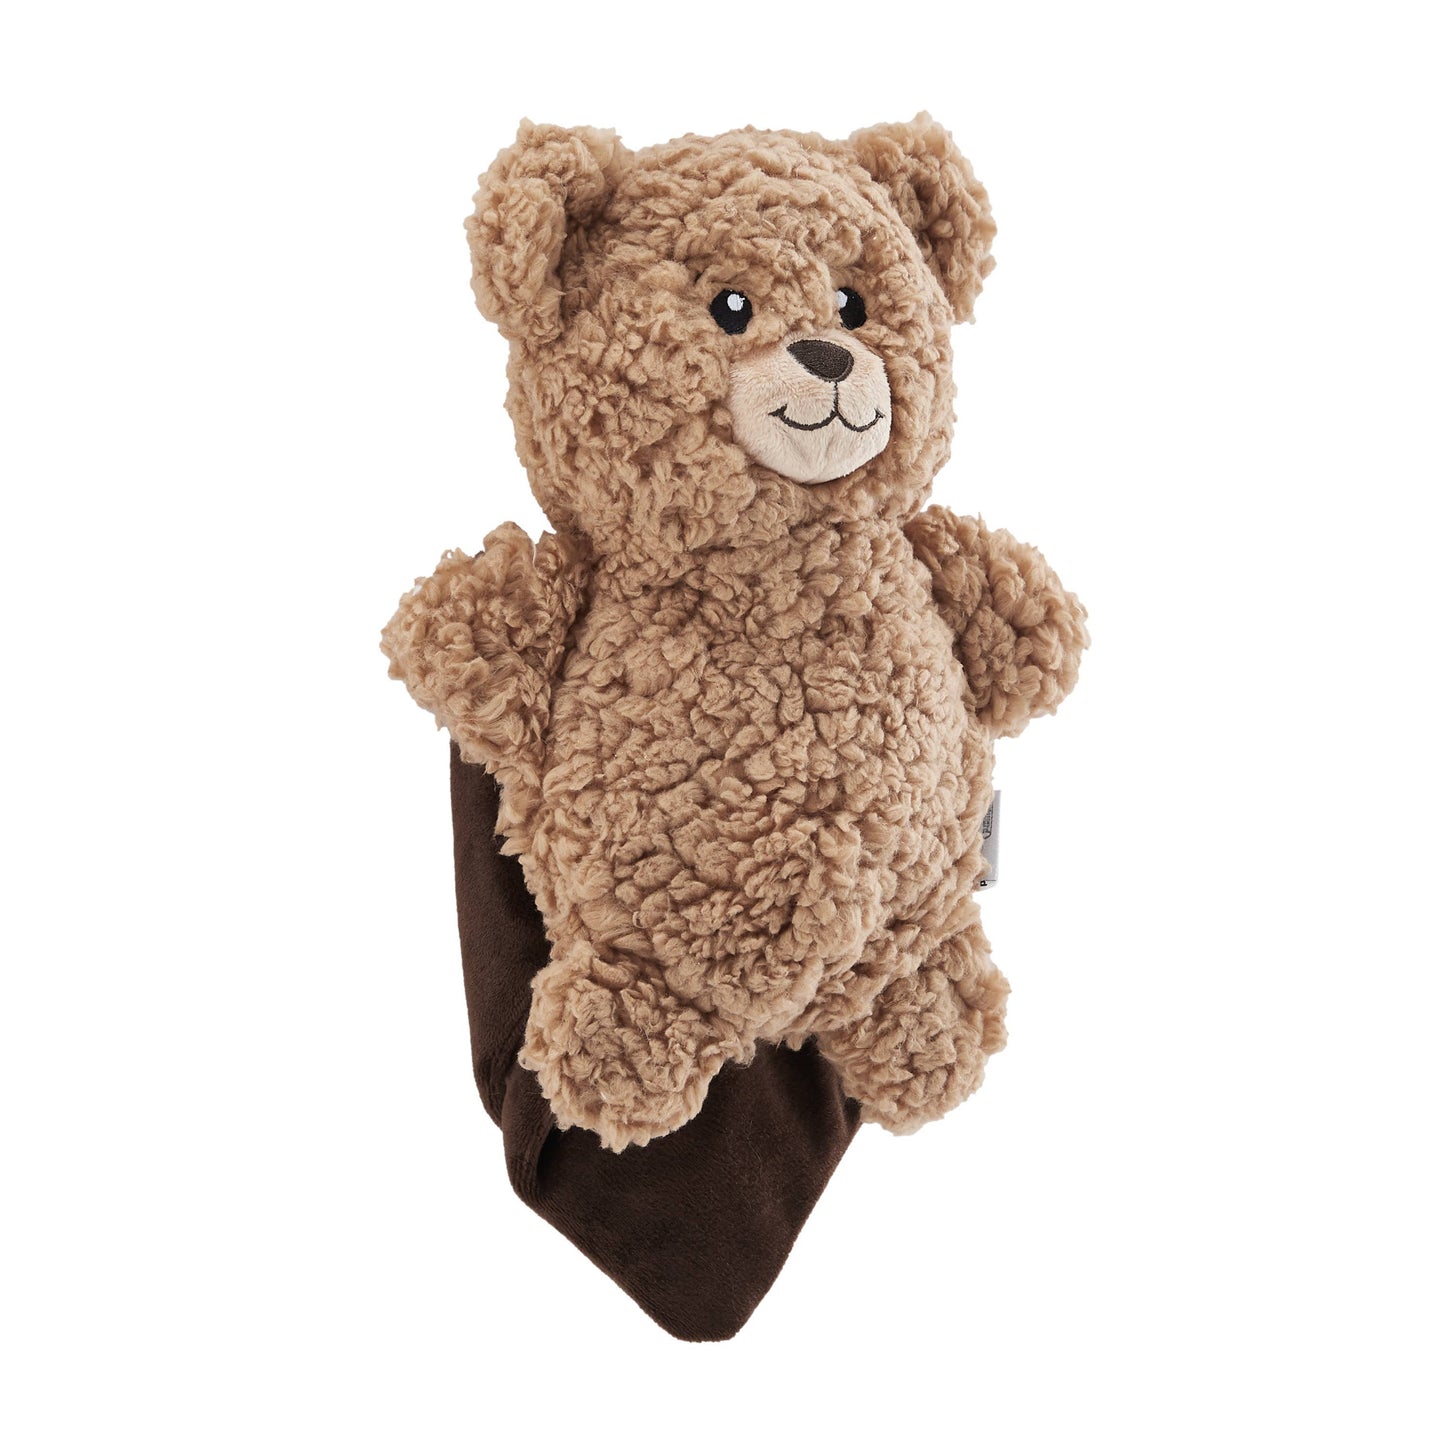 Outward Hound Blanket Buddies Brown Bear Toy